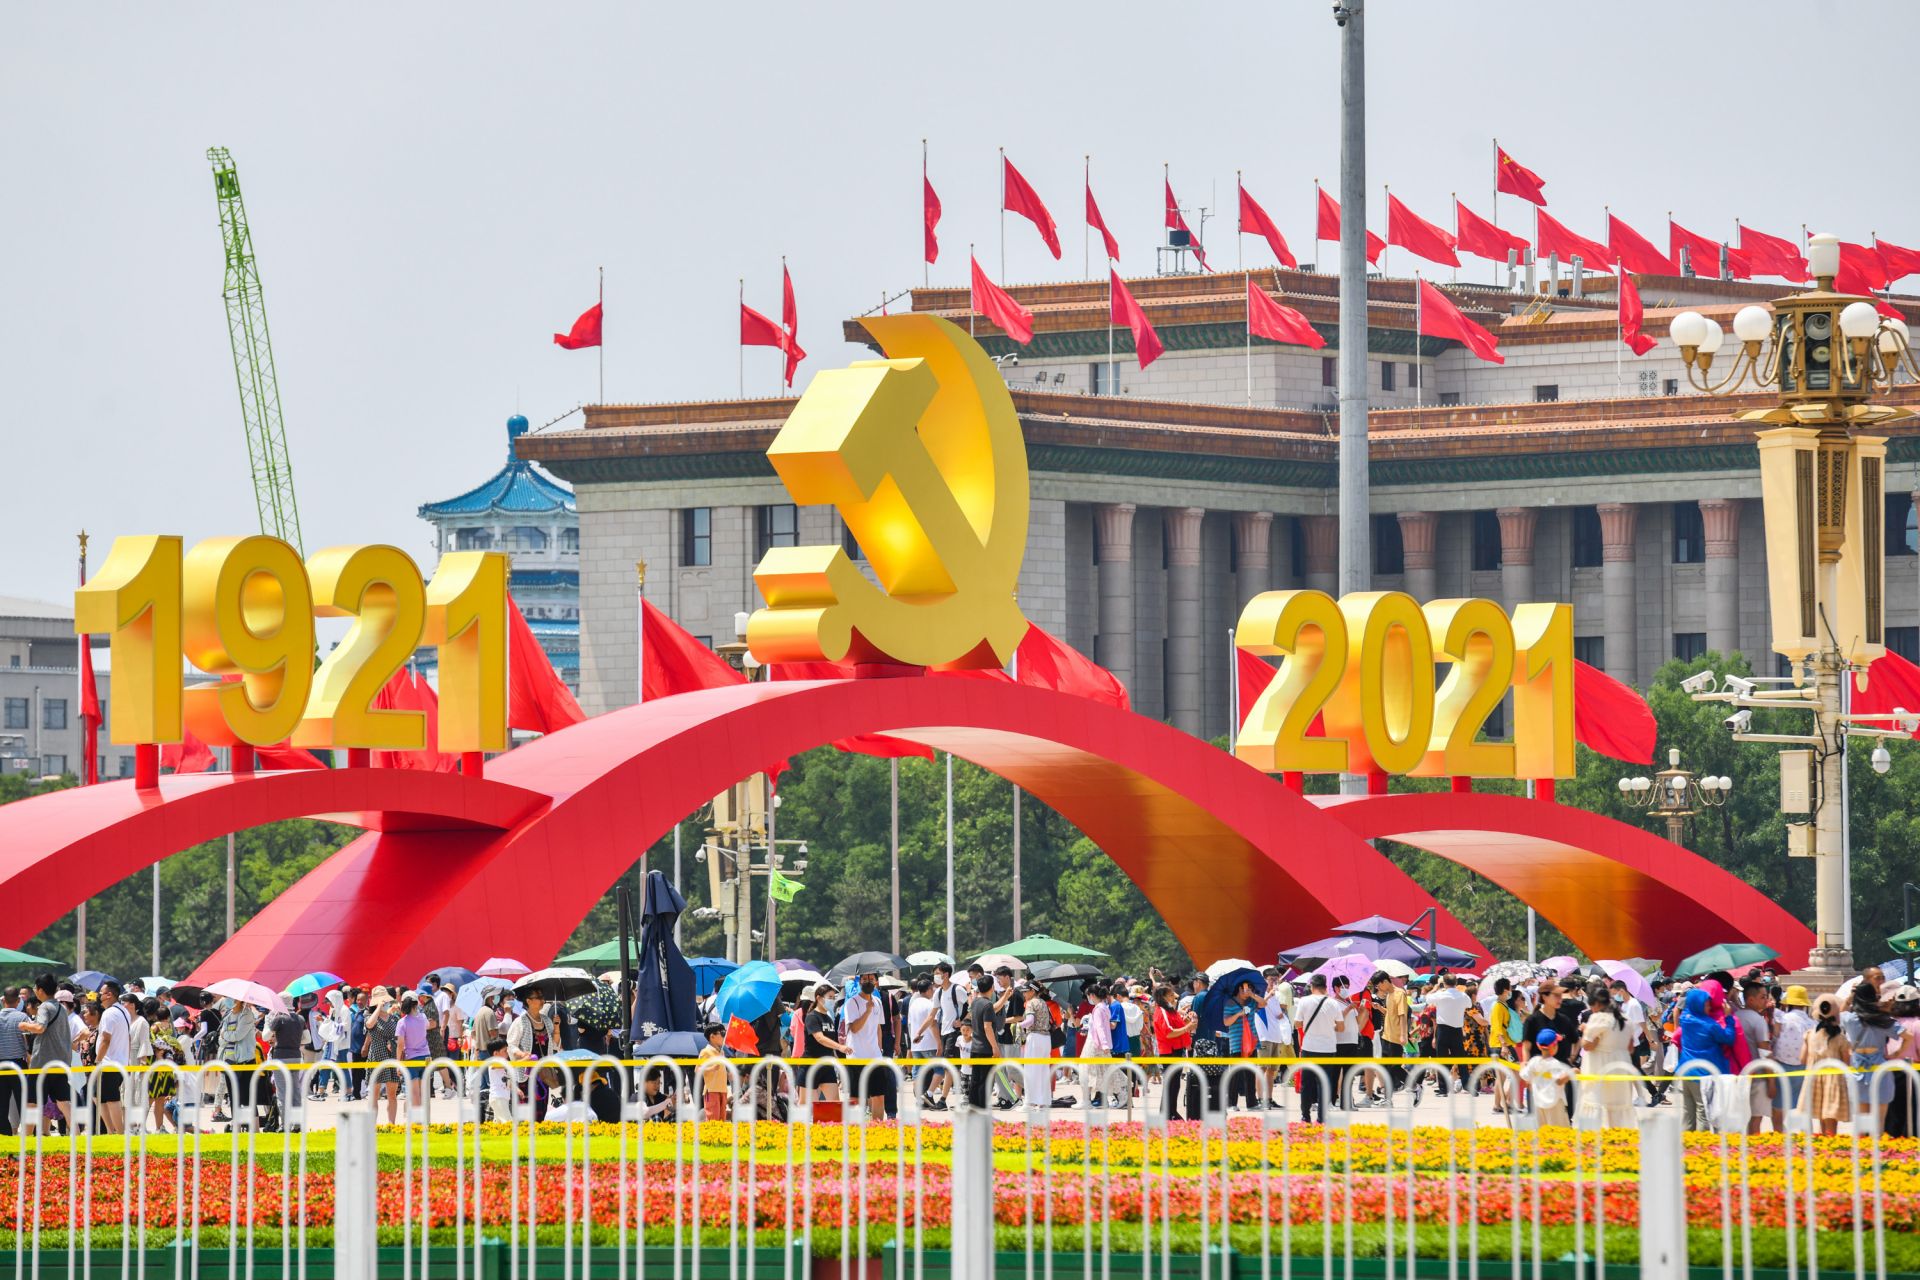 天安门广场自12月15日起实施预约观光法子|2020年国庆节北京旅游|2020年北京十一旅游景点